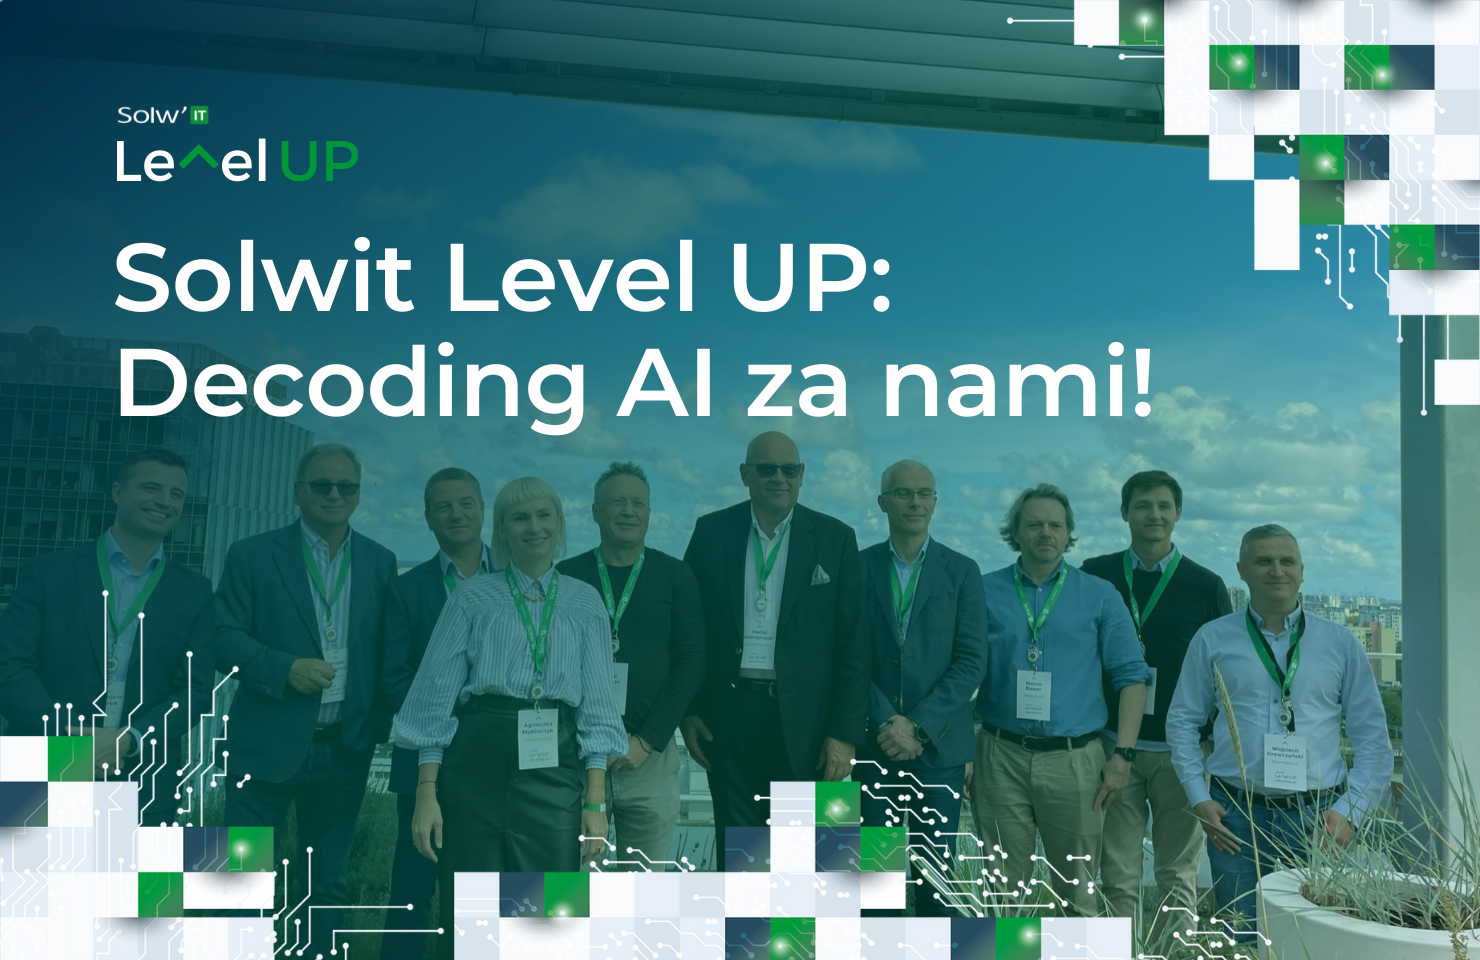 Solwit Level Up: Decoding AI za nami!